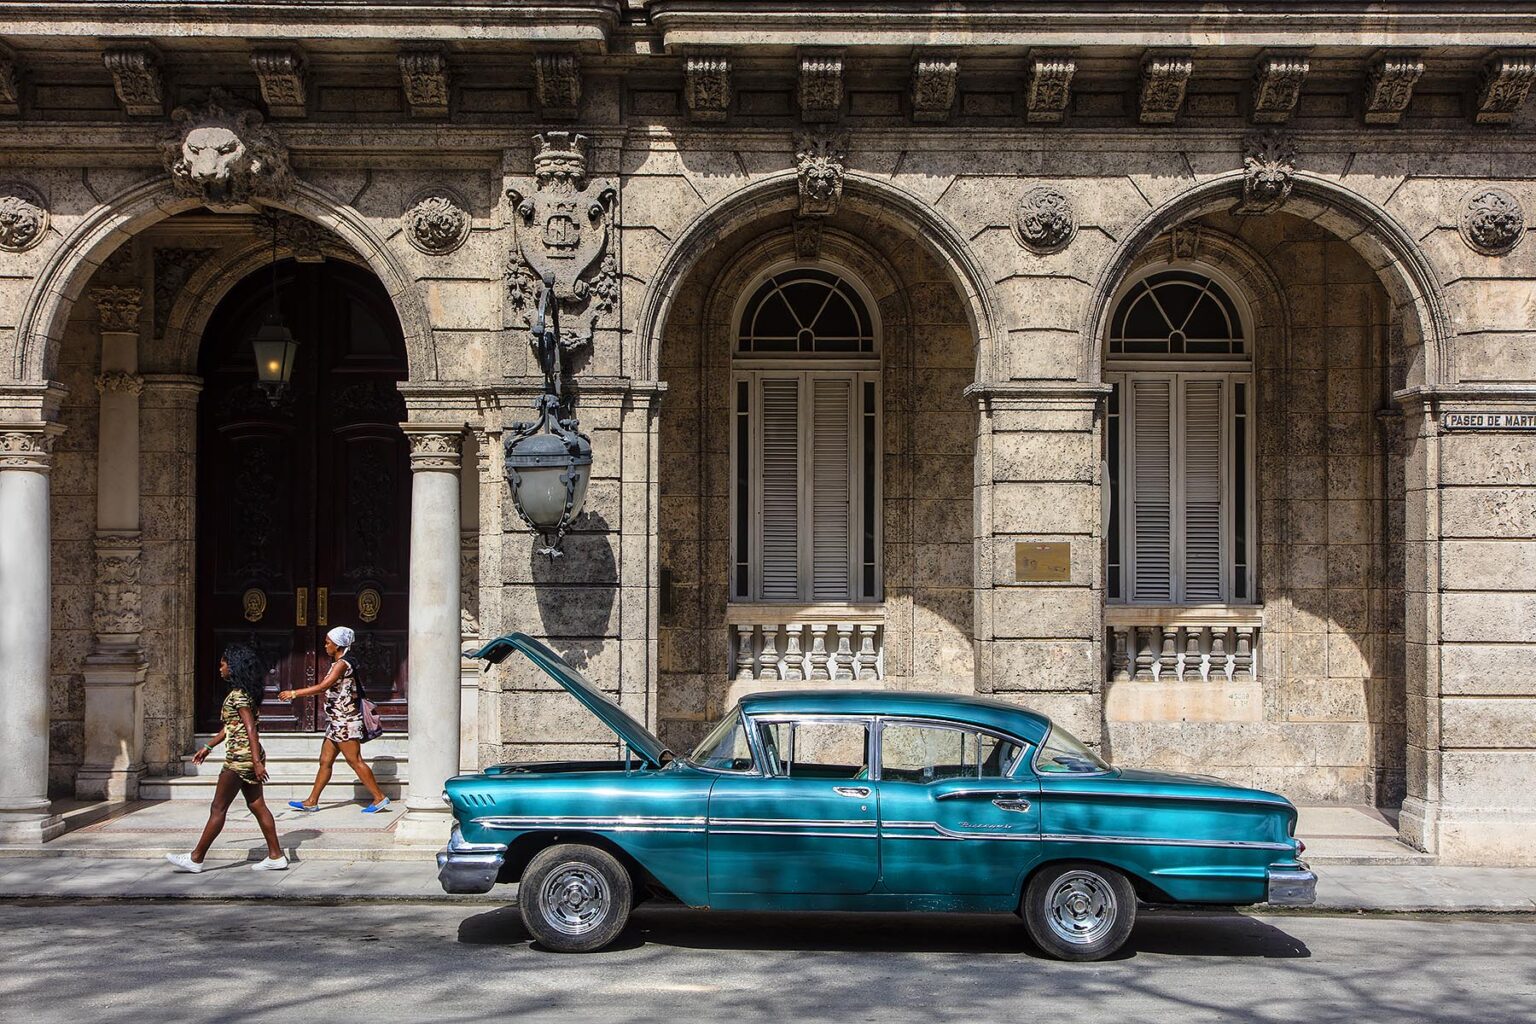 A classic American car along the PASEO DE MARTI also known as the PRADO - HAVANA, CUBA